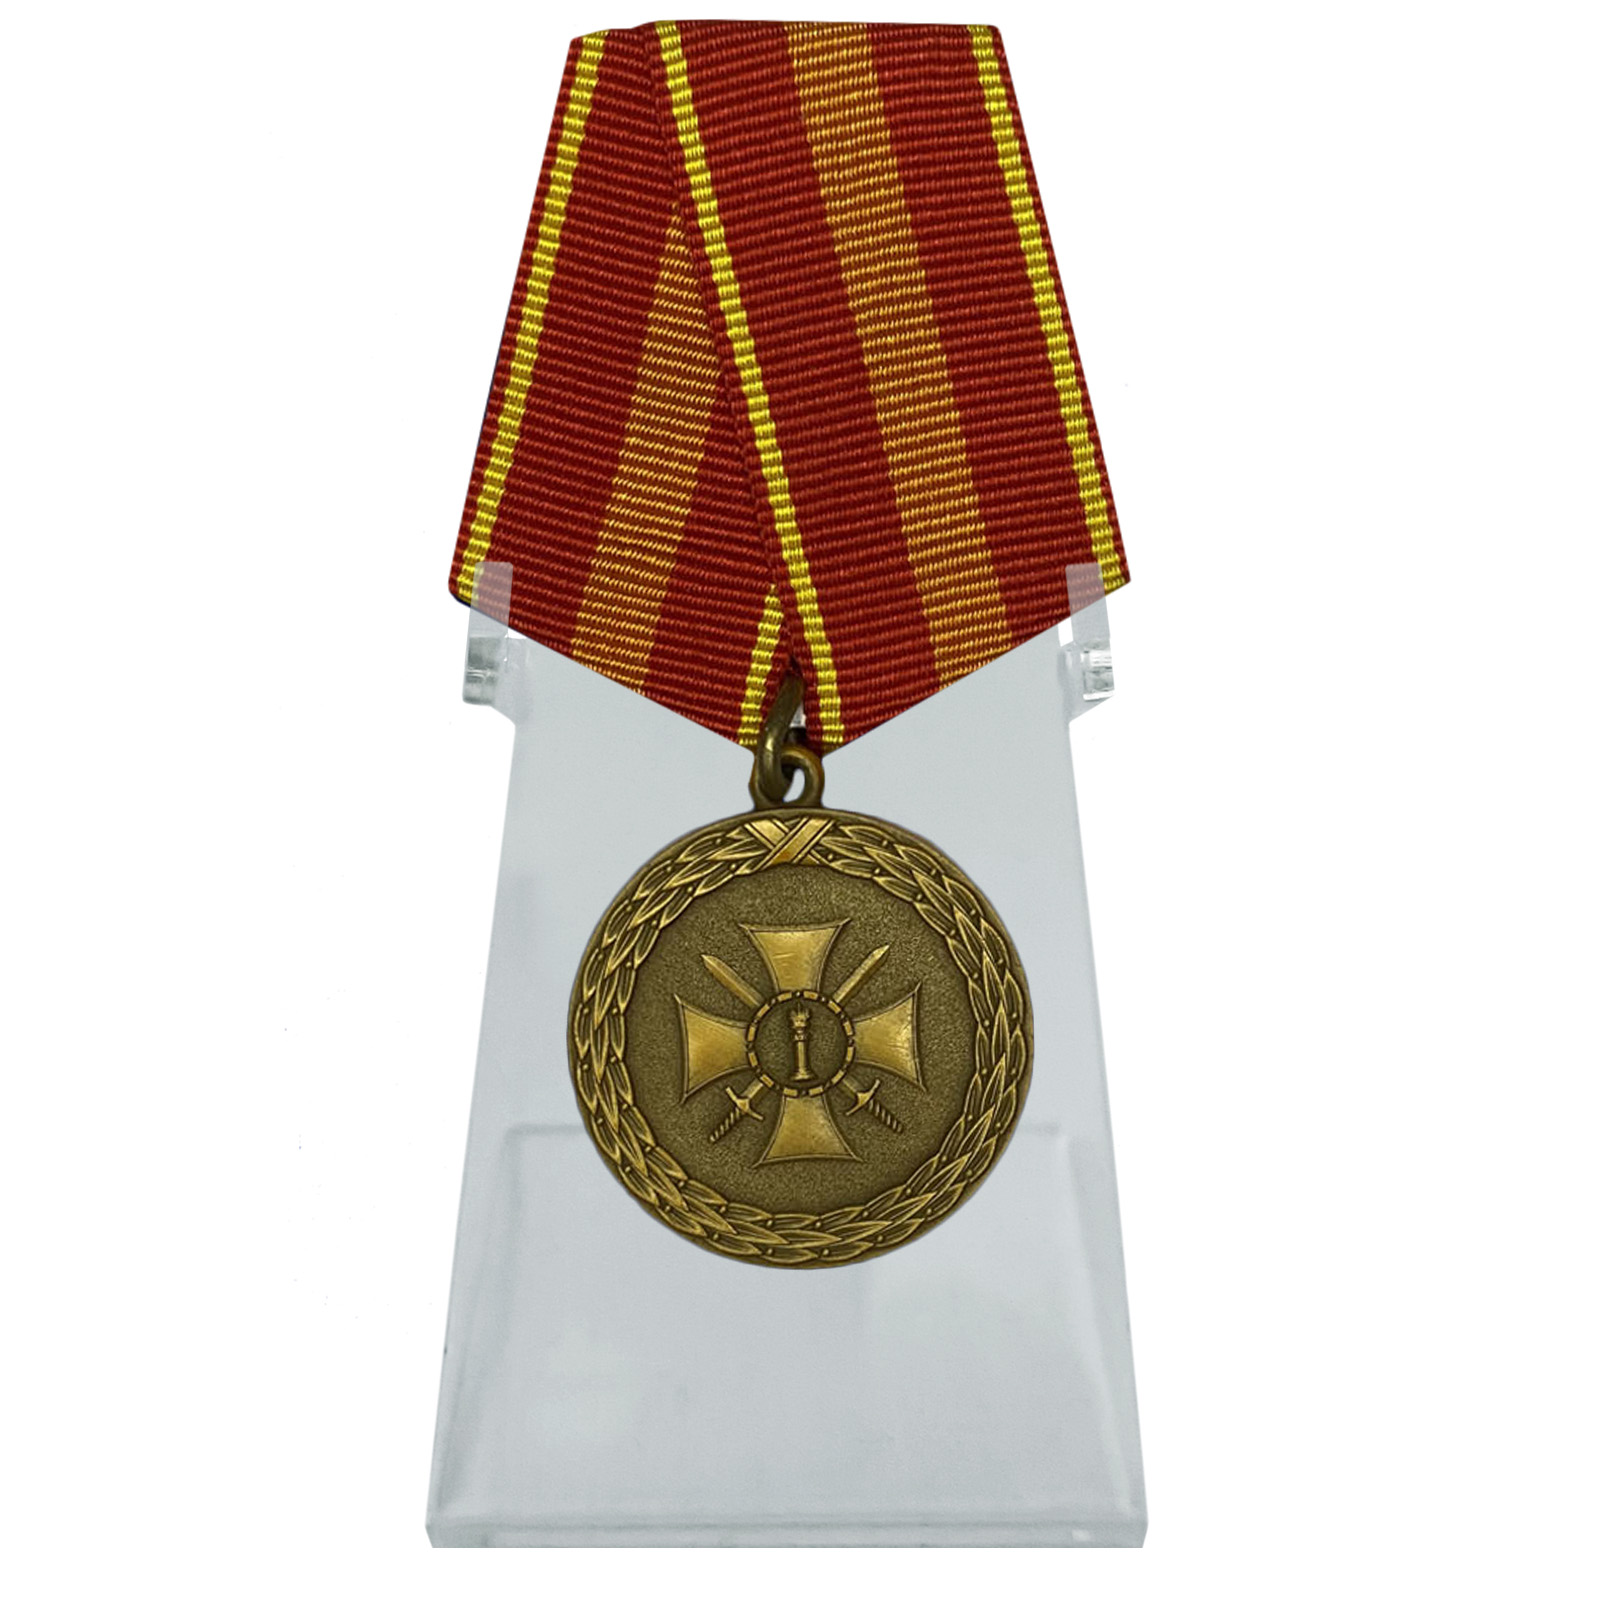 Медаль "За доблесть" 2 степени на подставке